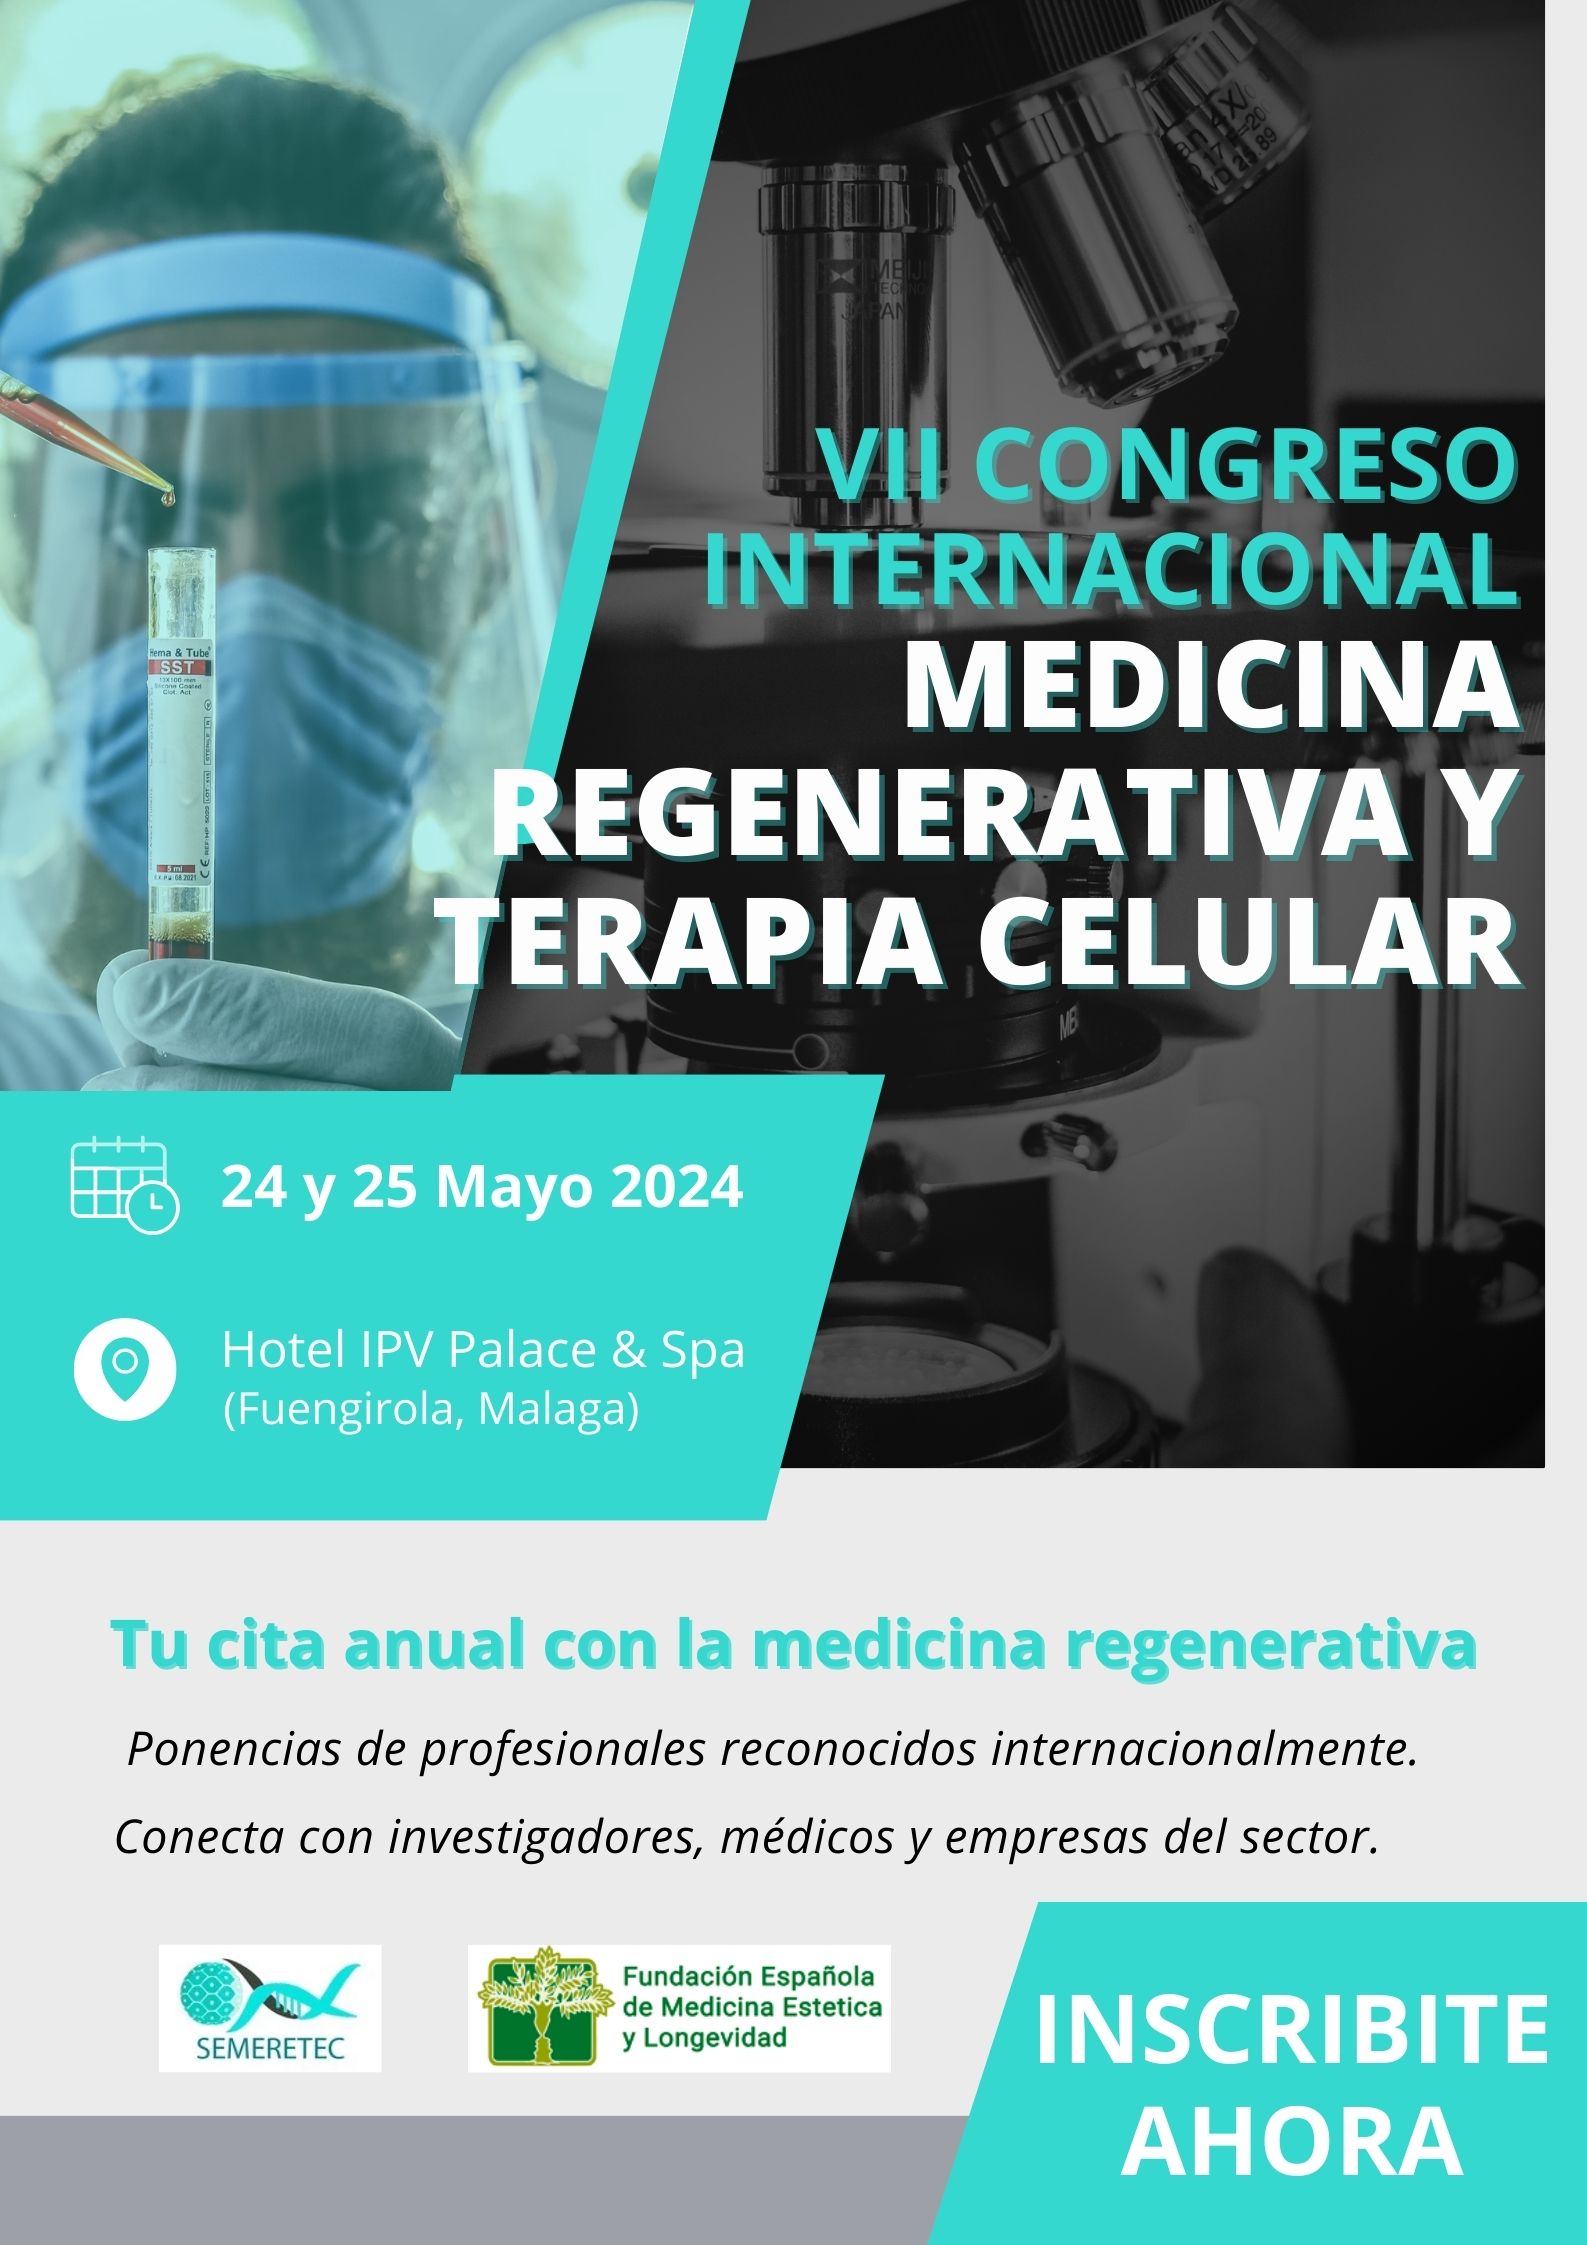 VII congreso internacional de medicina regenerativa y terapa celular 2024 (malaga)